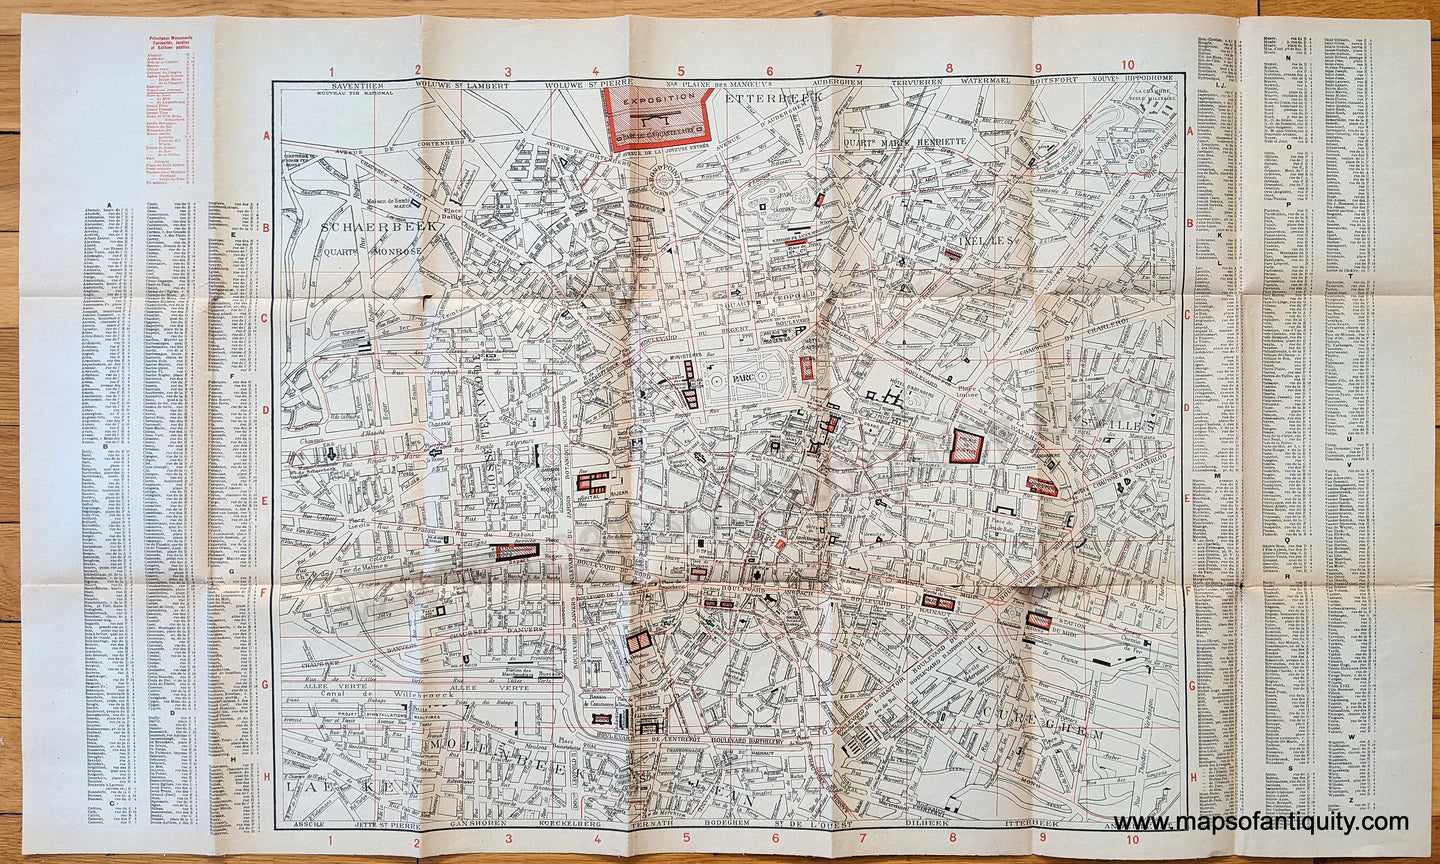 Genuine-Antique-Map-Brussels-Belgium---Plan-de-Bruxelles-Europe-Belgium-1897-Society-du-Grand-Maps-Of-Antiquity-1800s-19th-century